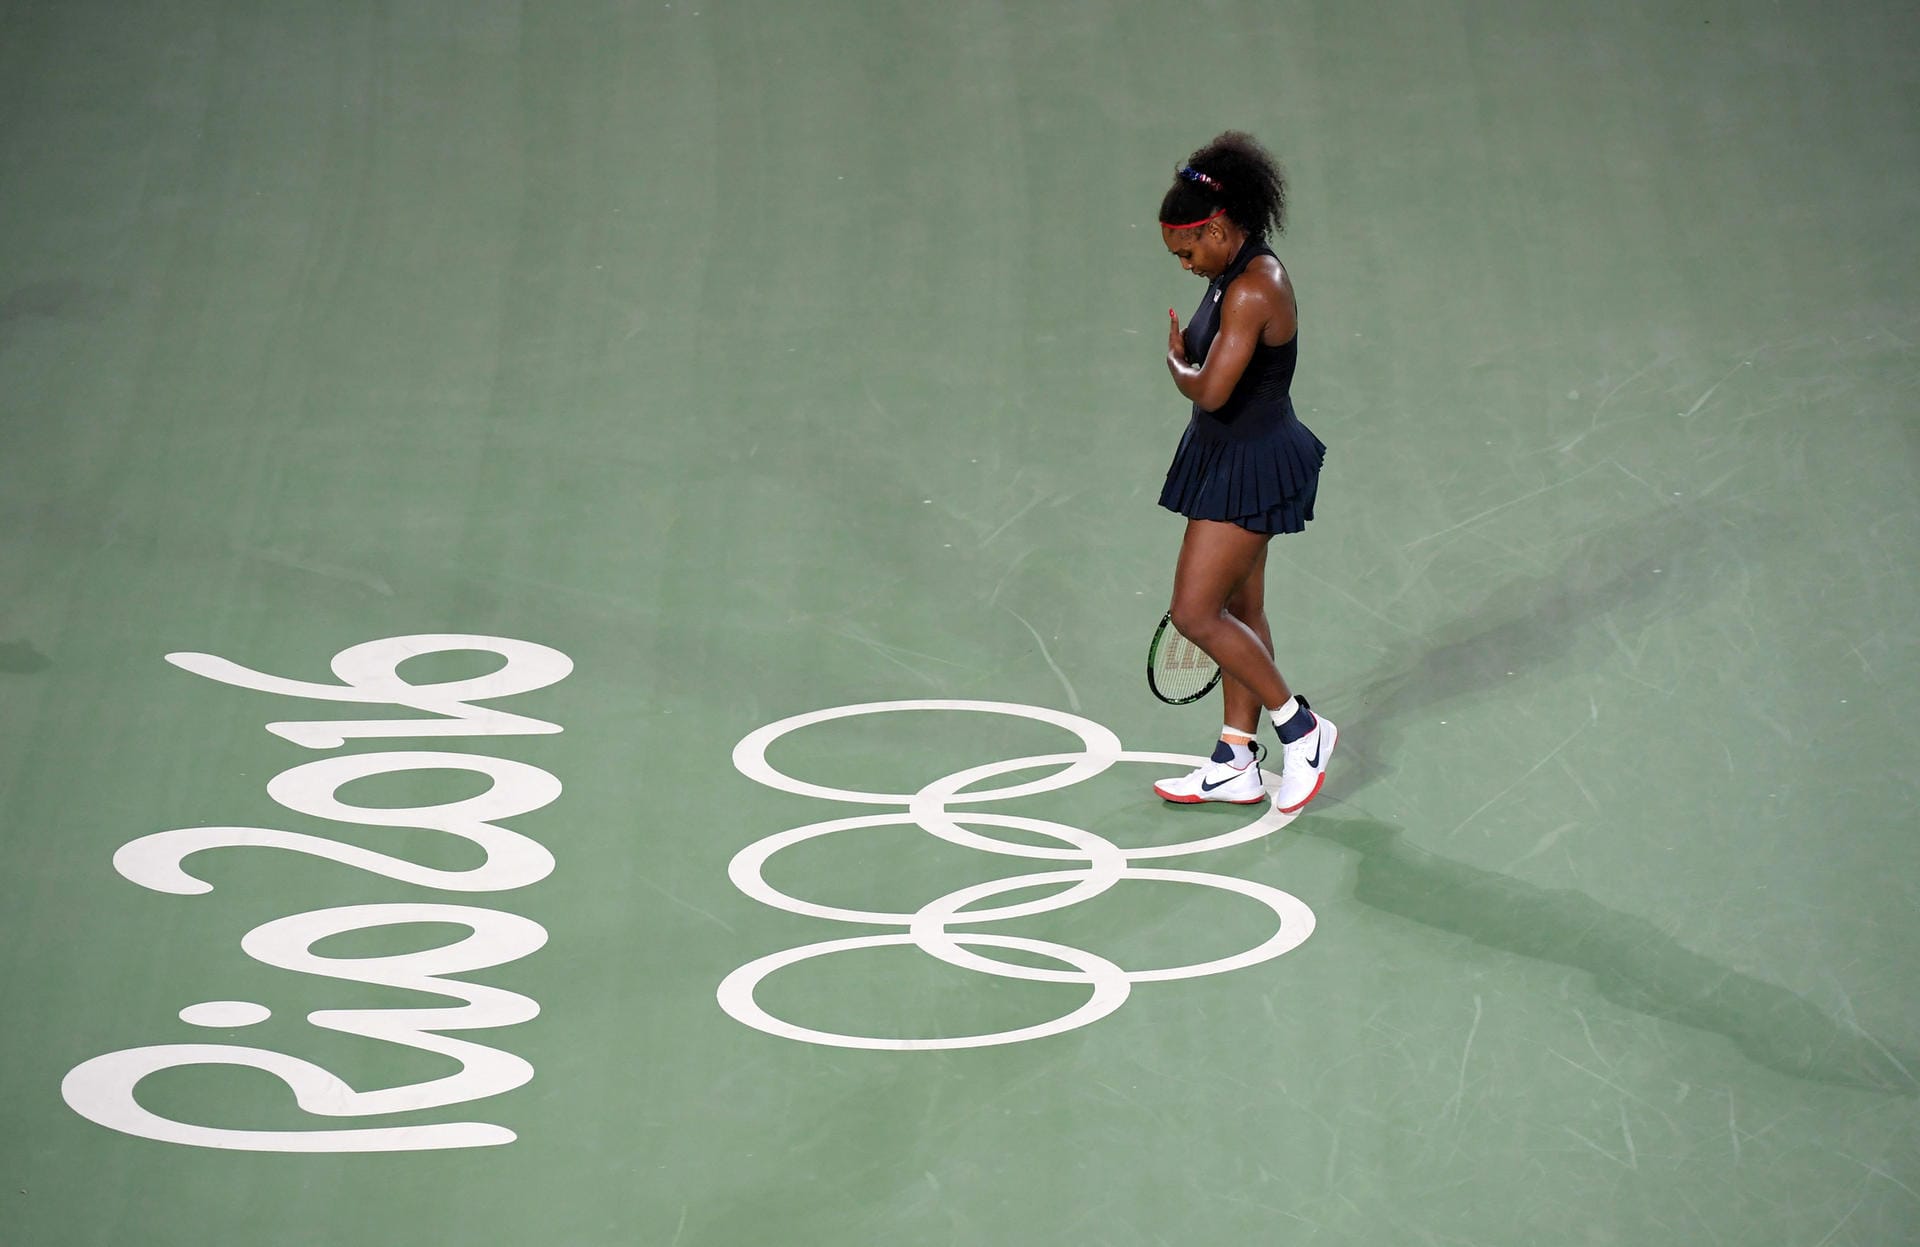 Serena Williams ist völlig überraschend gegen Elina Svitolina ausgeschieden. Die Enttäuschung ist ihr anzusehen.